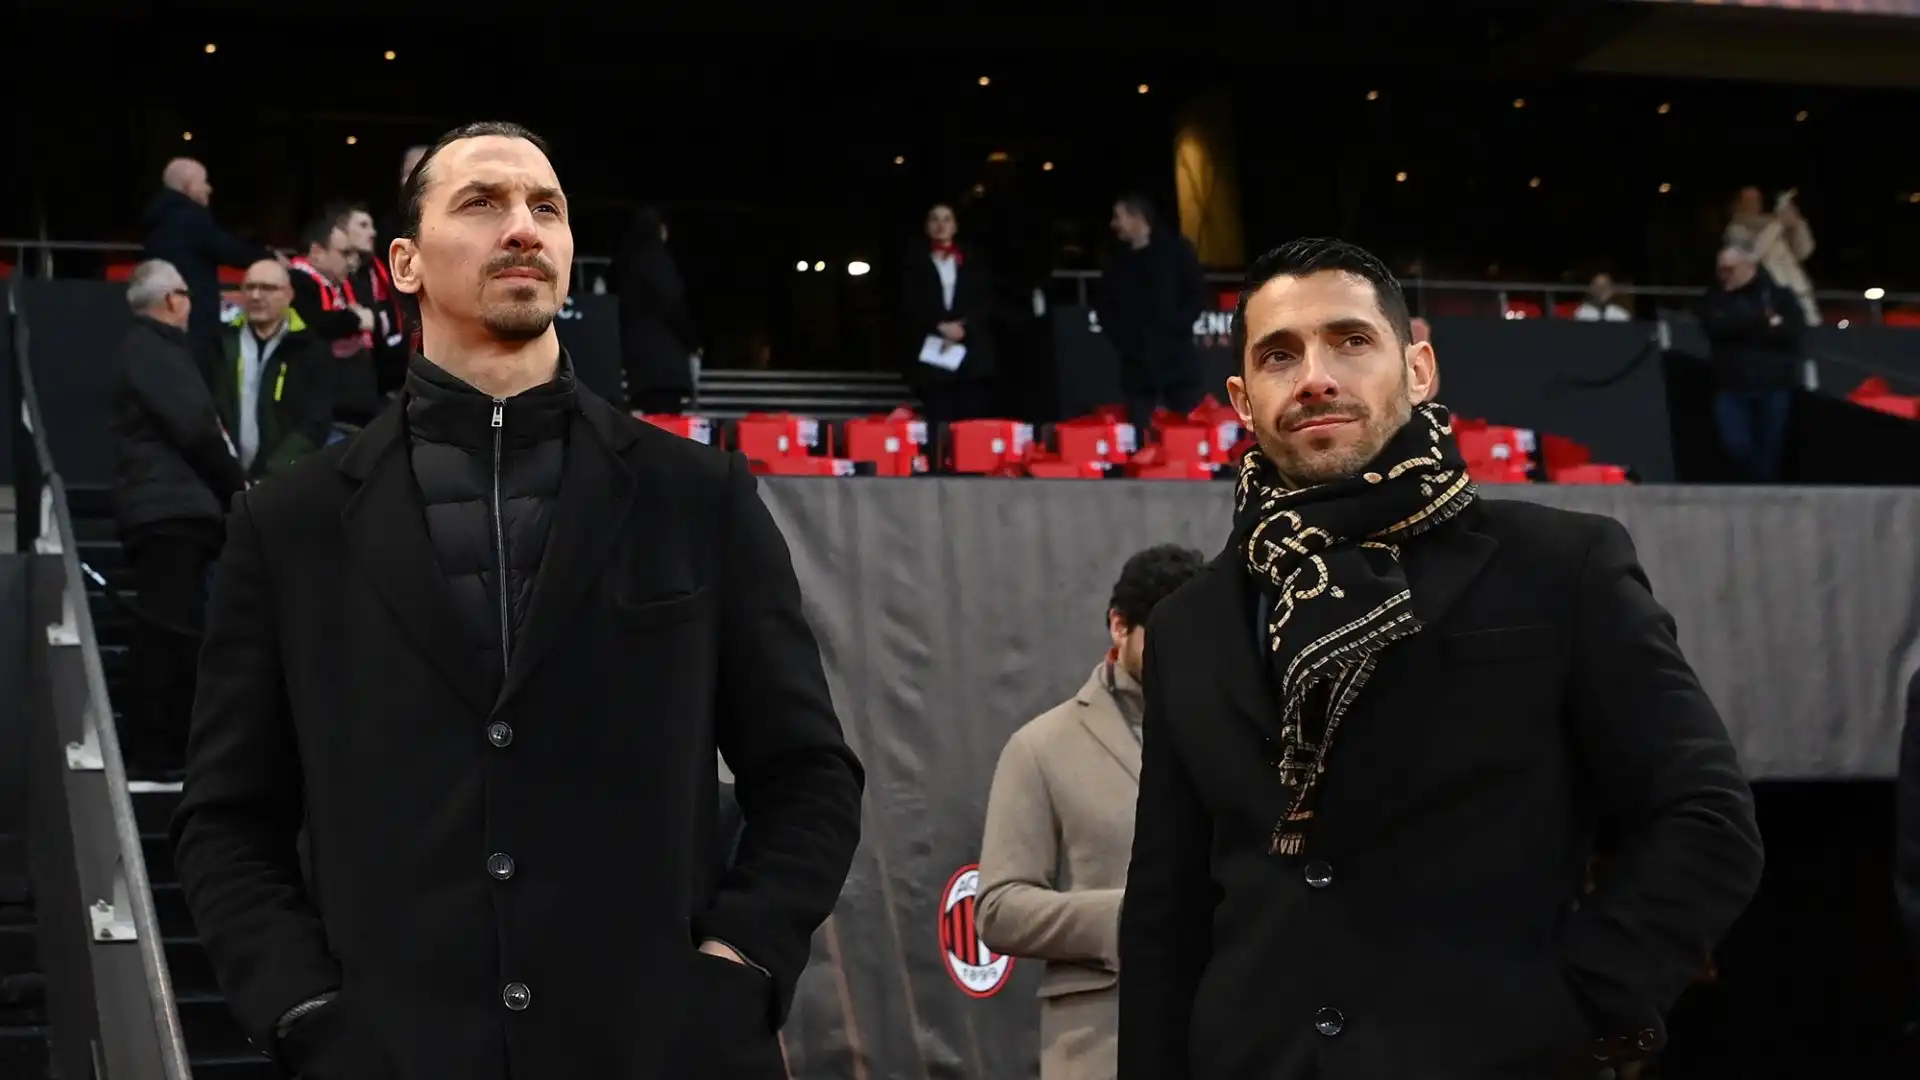 Secondo la Gazzetta dello Sport, Zlatan Ibrahimovic e i dirigenti rossoneri sono ben consci che serve una svolta nel reparto difensivo, che in questa stagione ha già subito 48 gol